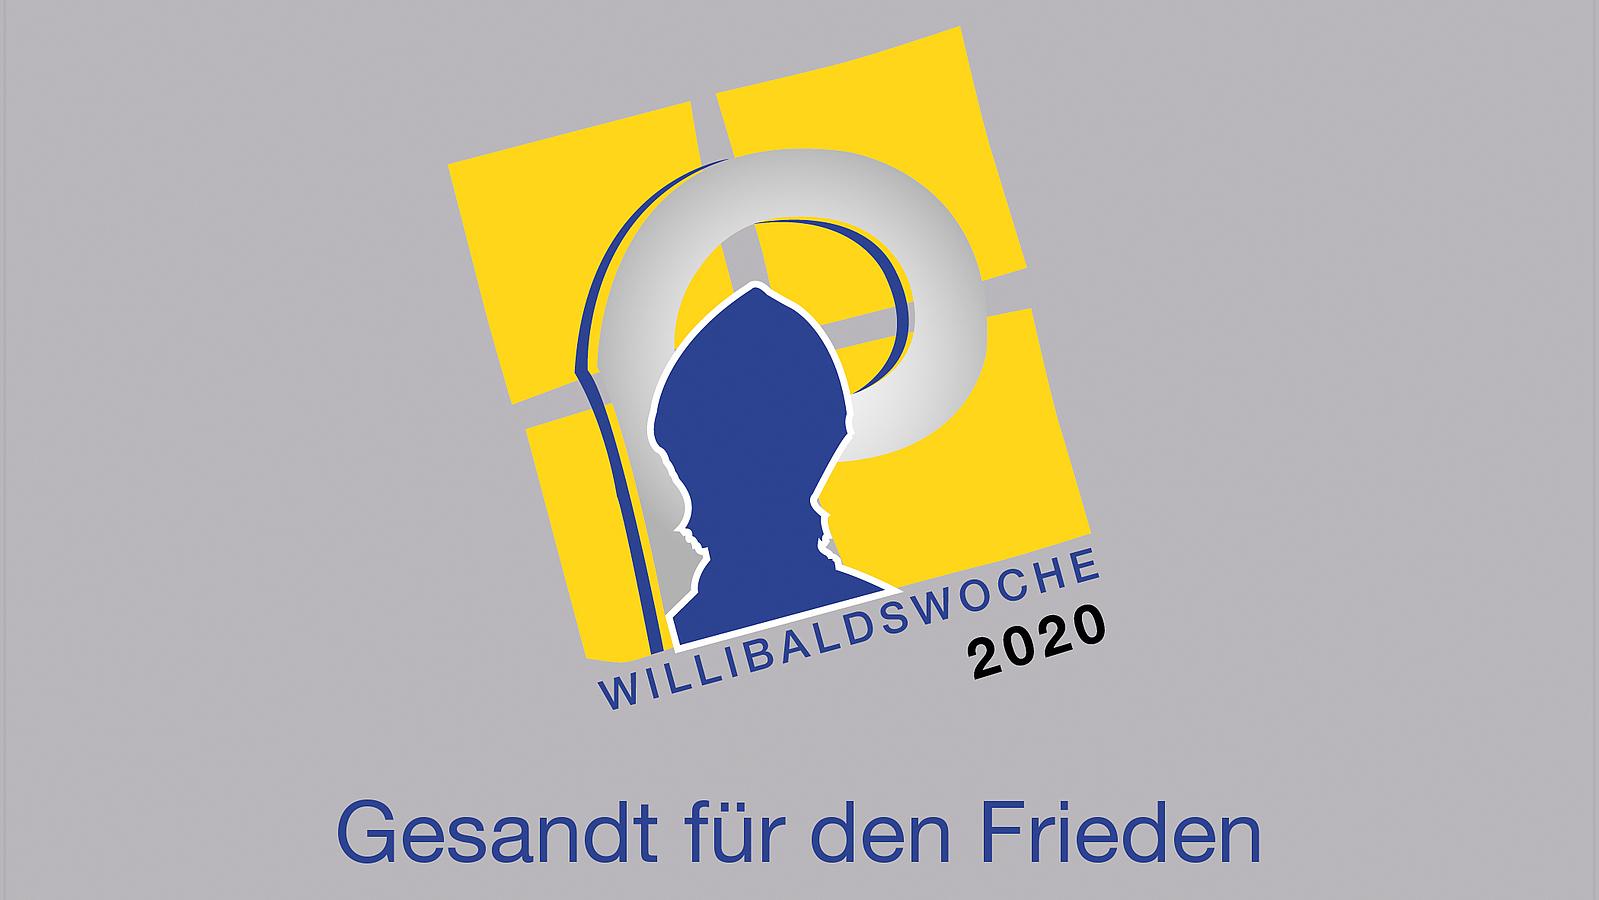 Logo der Willibaldswoche 2020